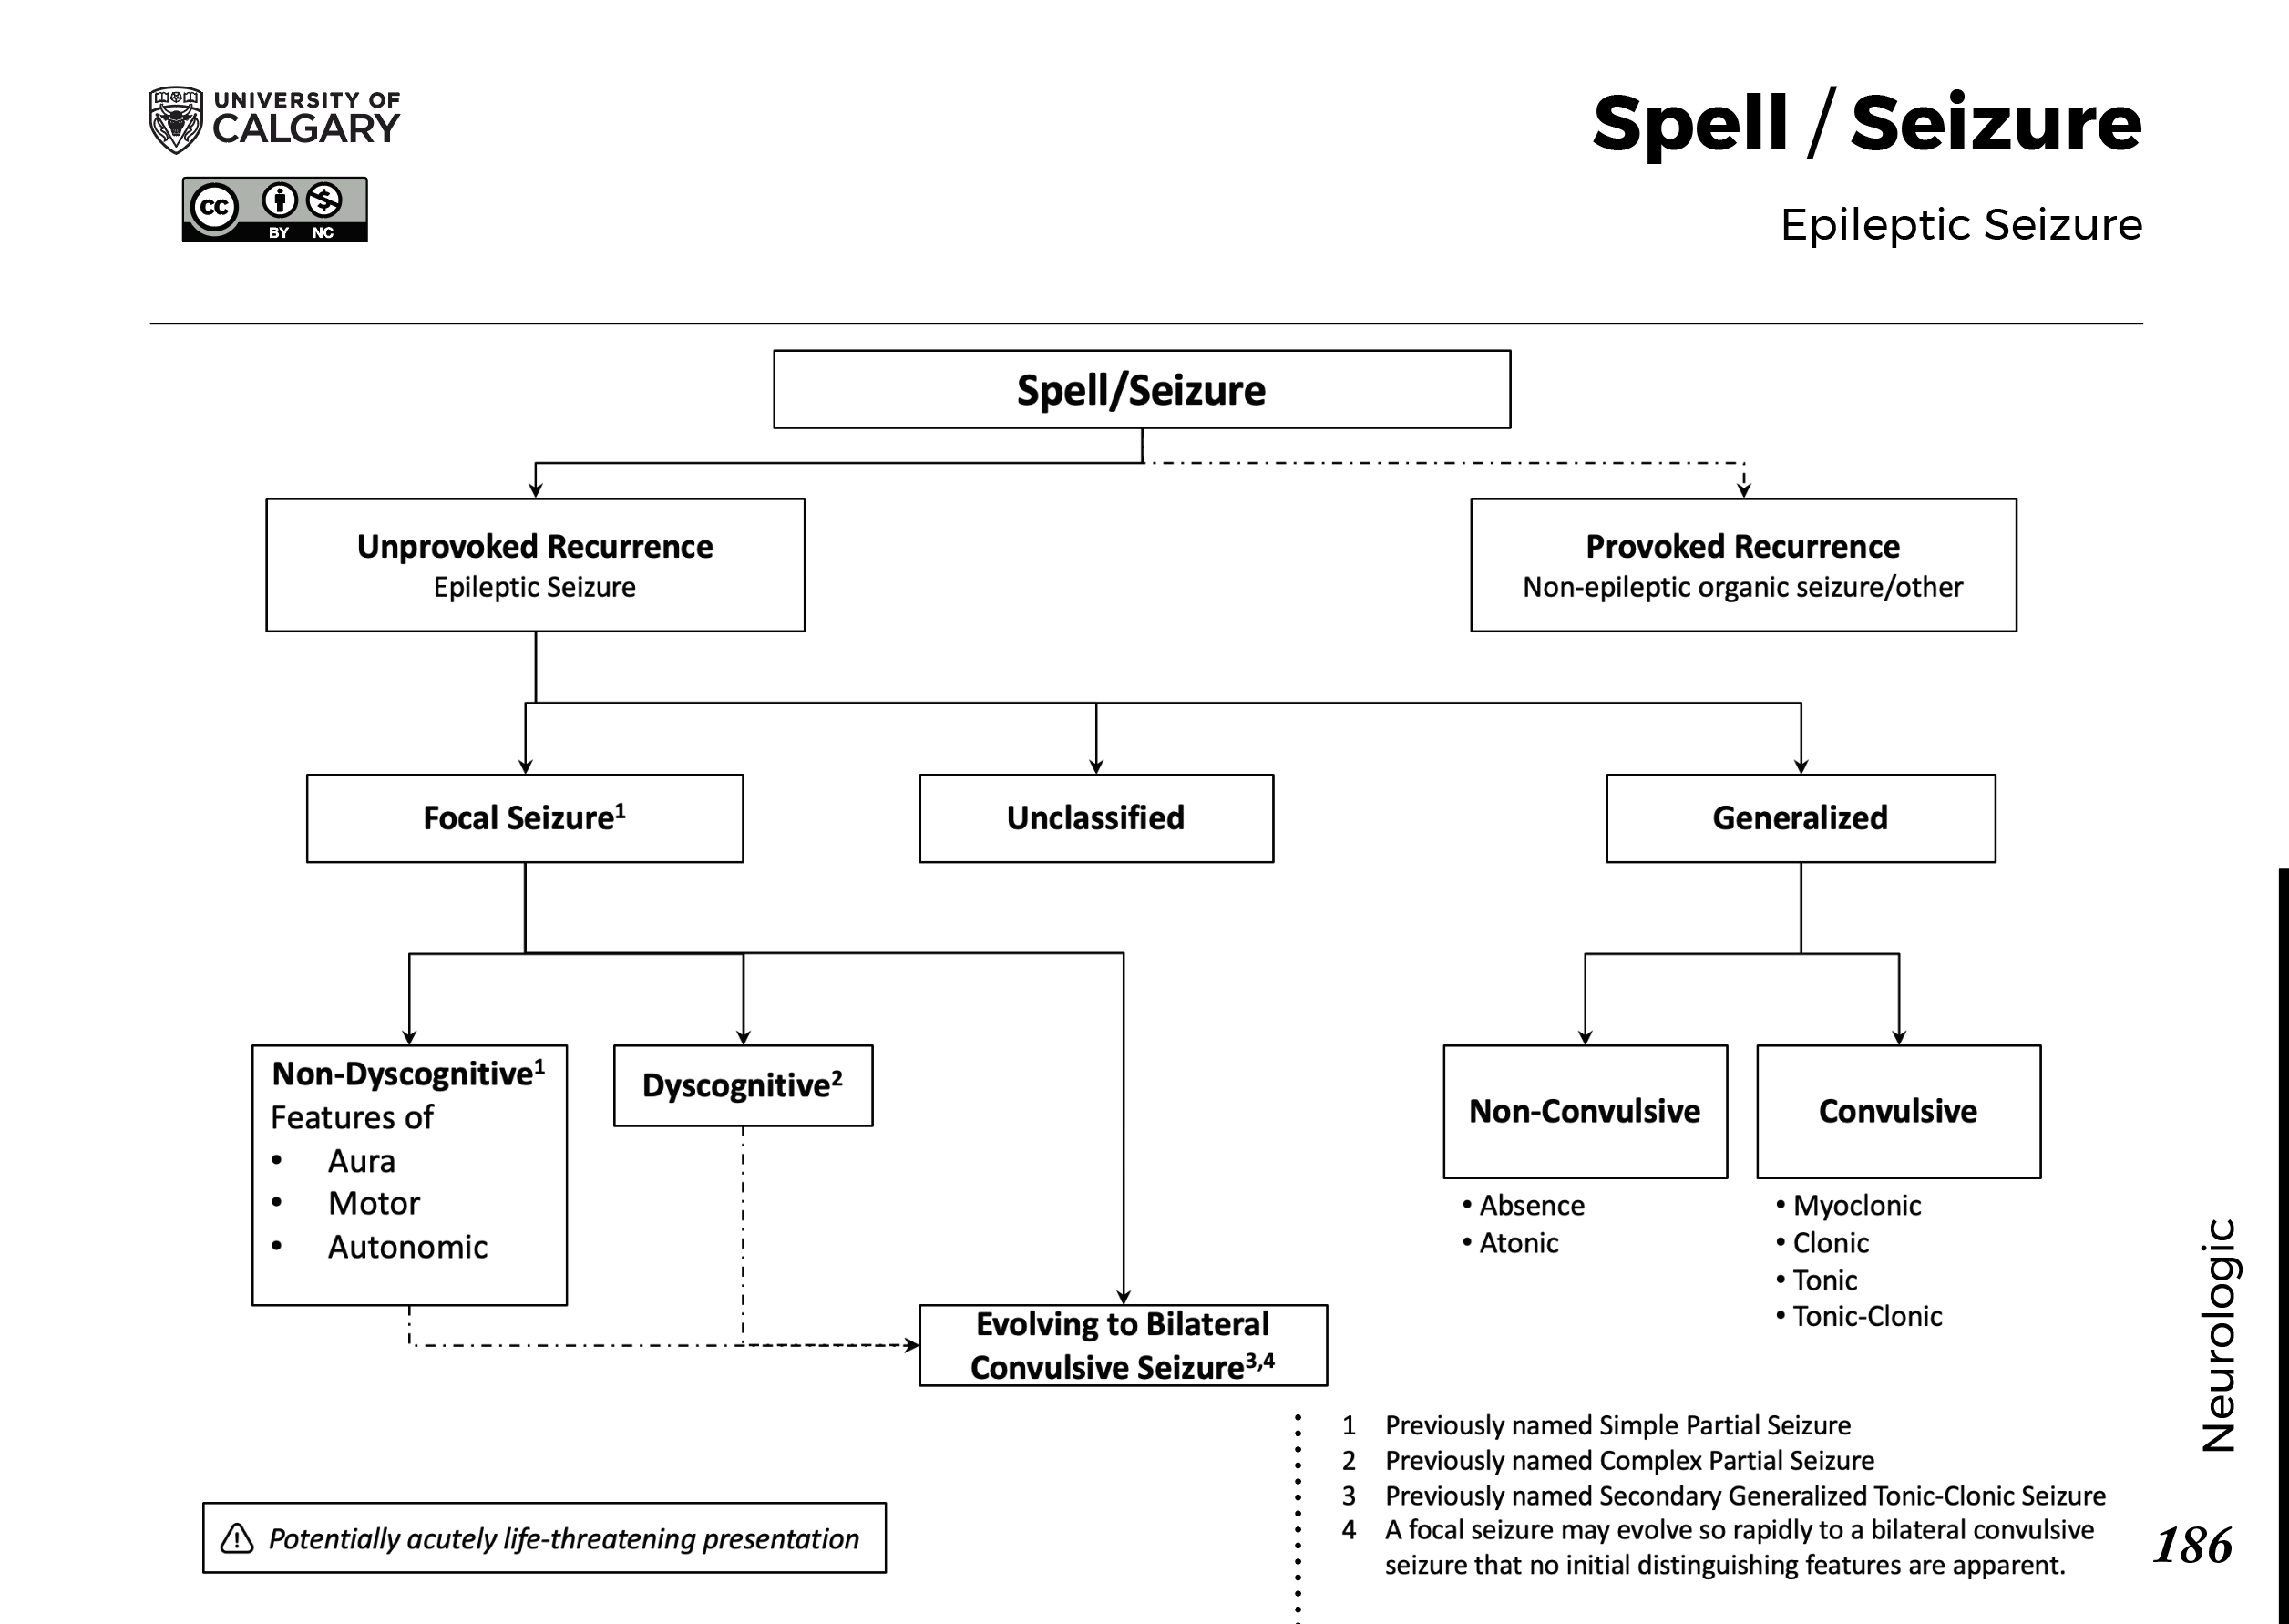 SPELL/SEIZURE: Epileptic Seizure Scheme